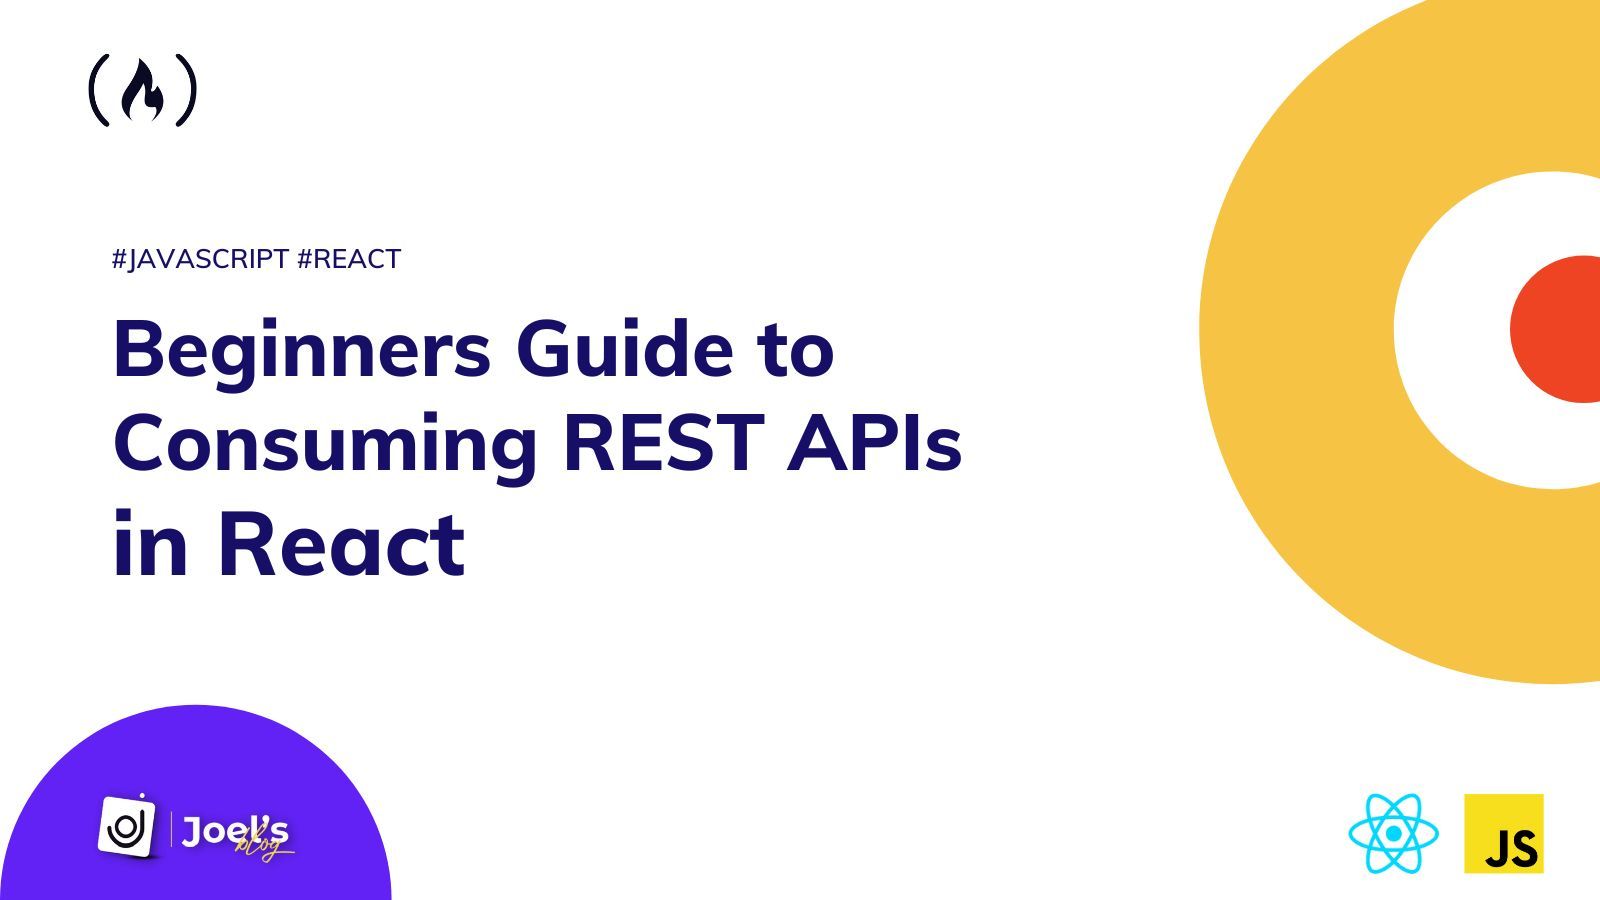 Cómo consumir REST APIs en React - Guía para principiantes